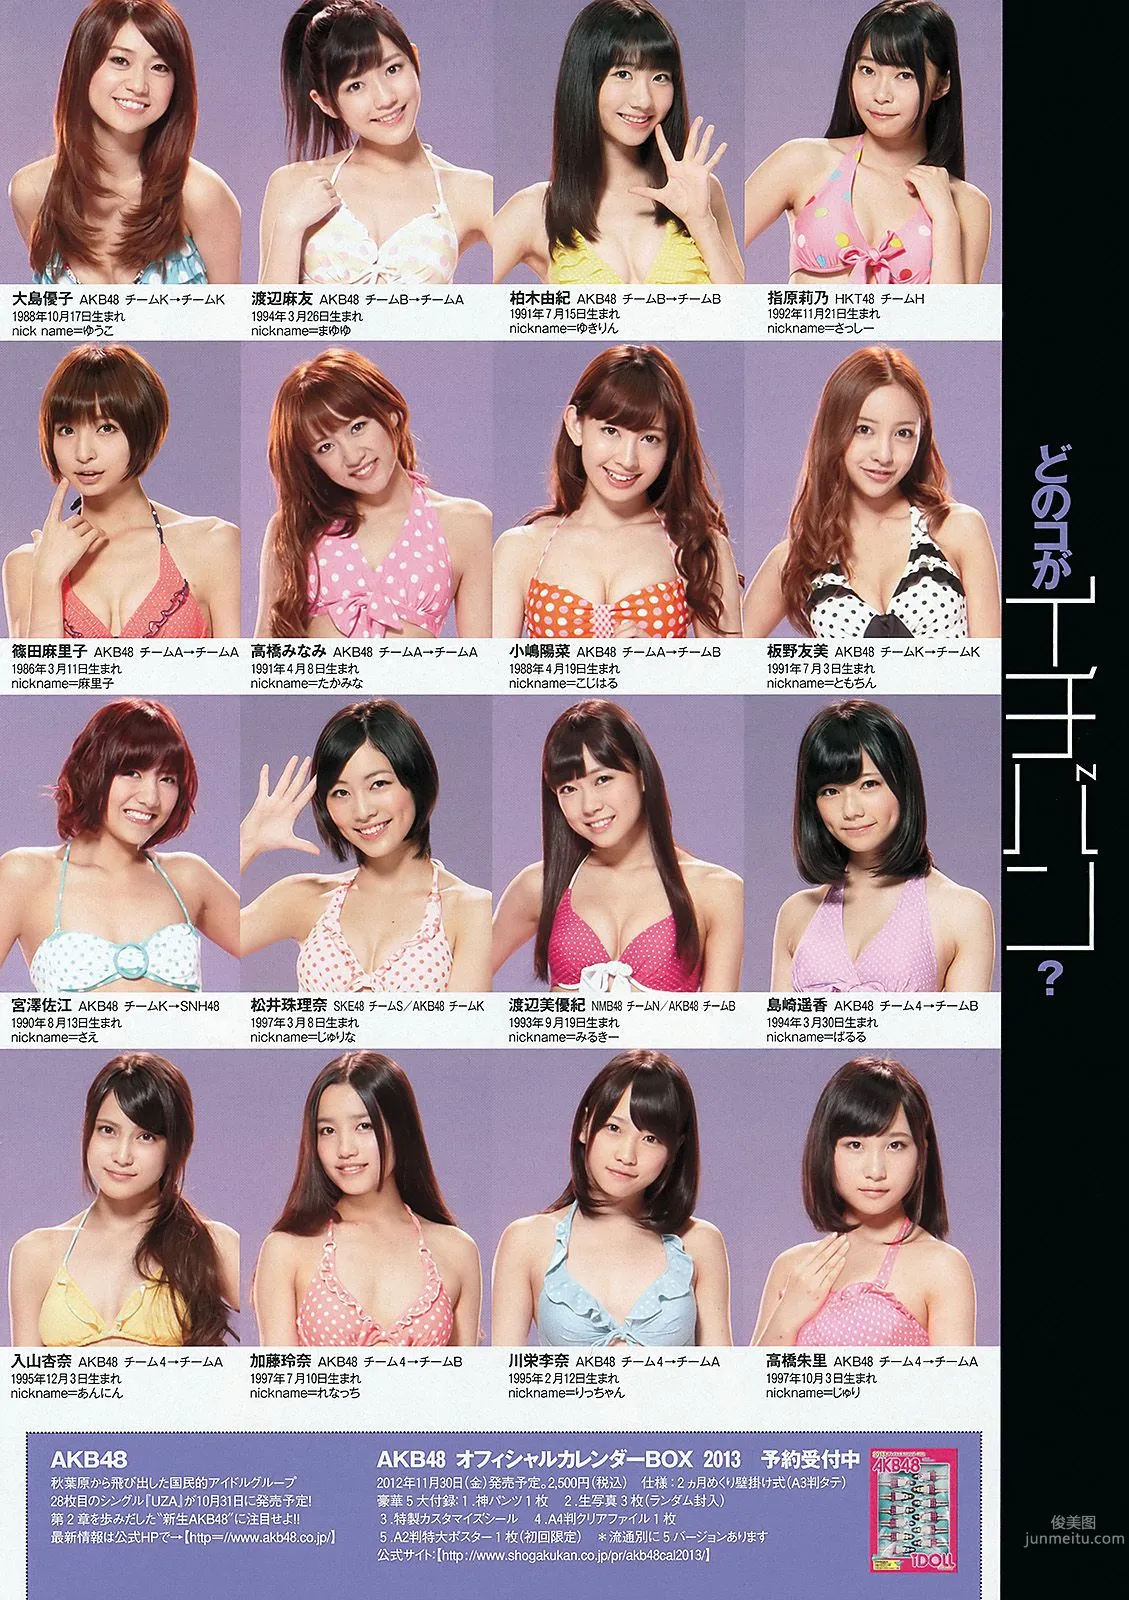 能年玲奈 AKB48 石橋杏奈 亜里沙 Ili 太田千晶 [Weekly Playboy] 2012年No.45 写真杂志11